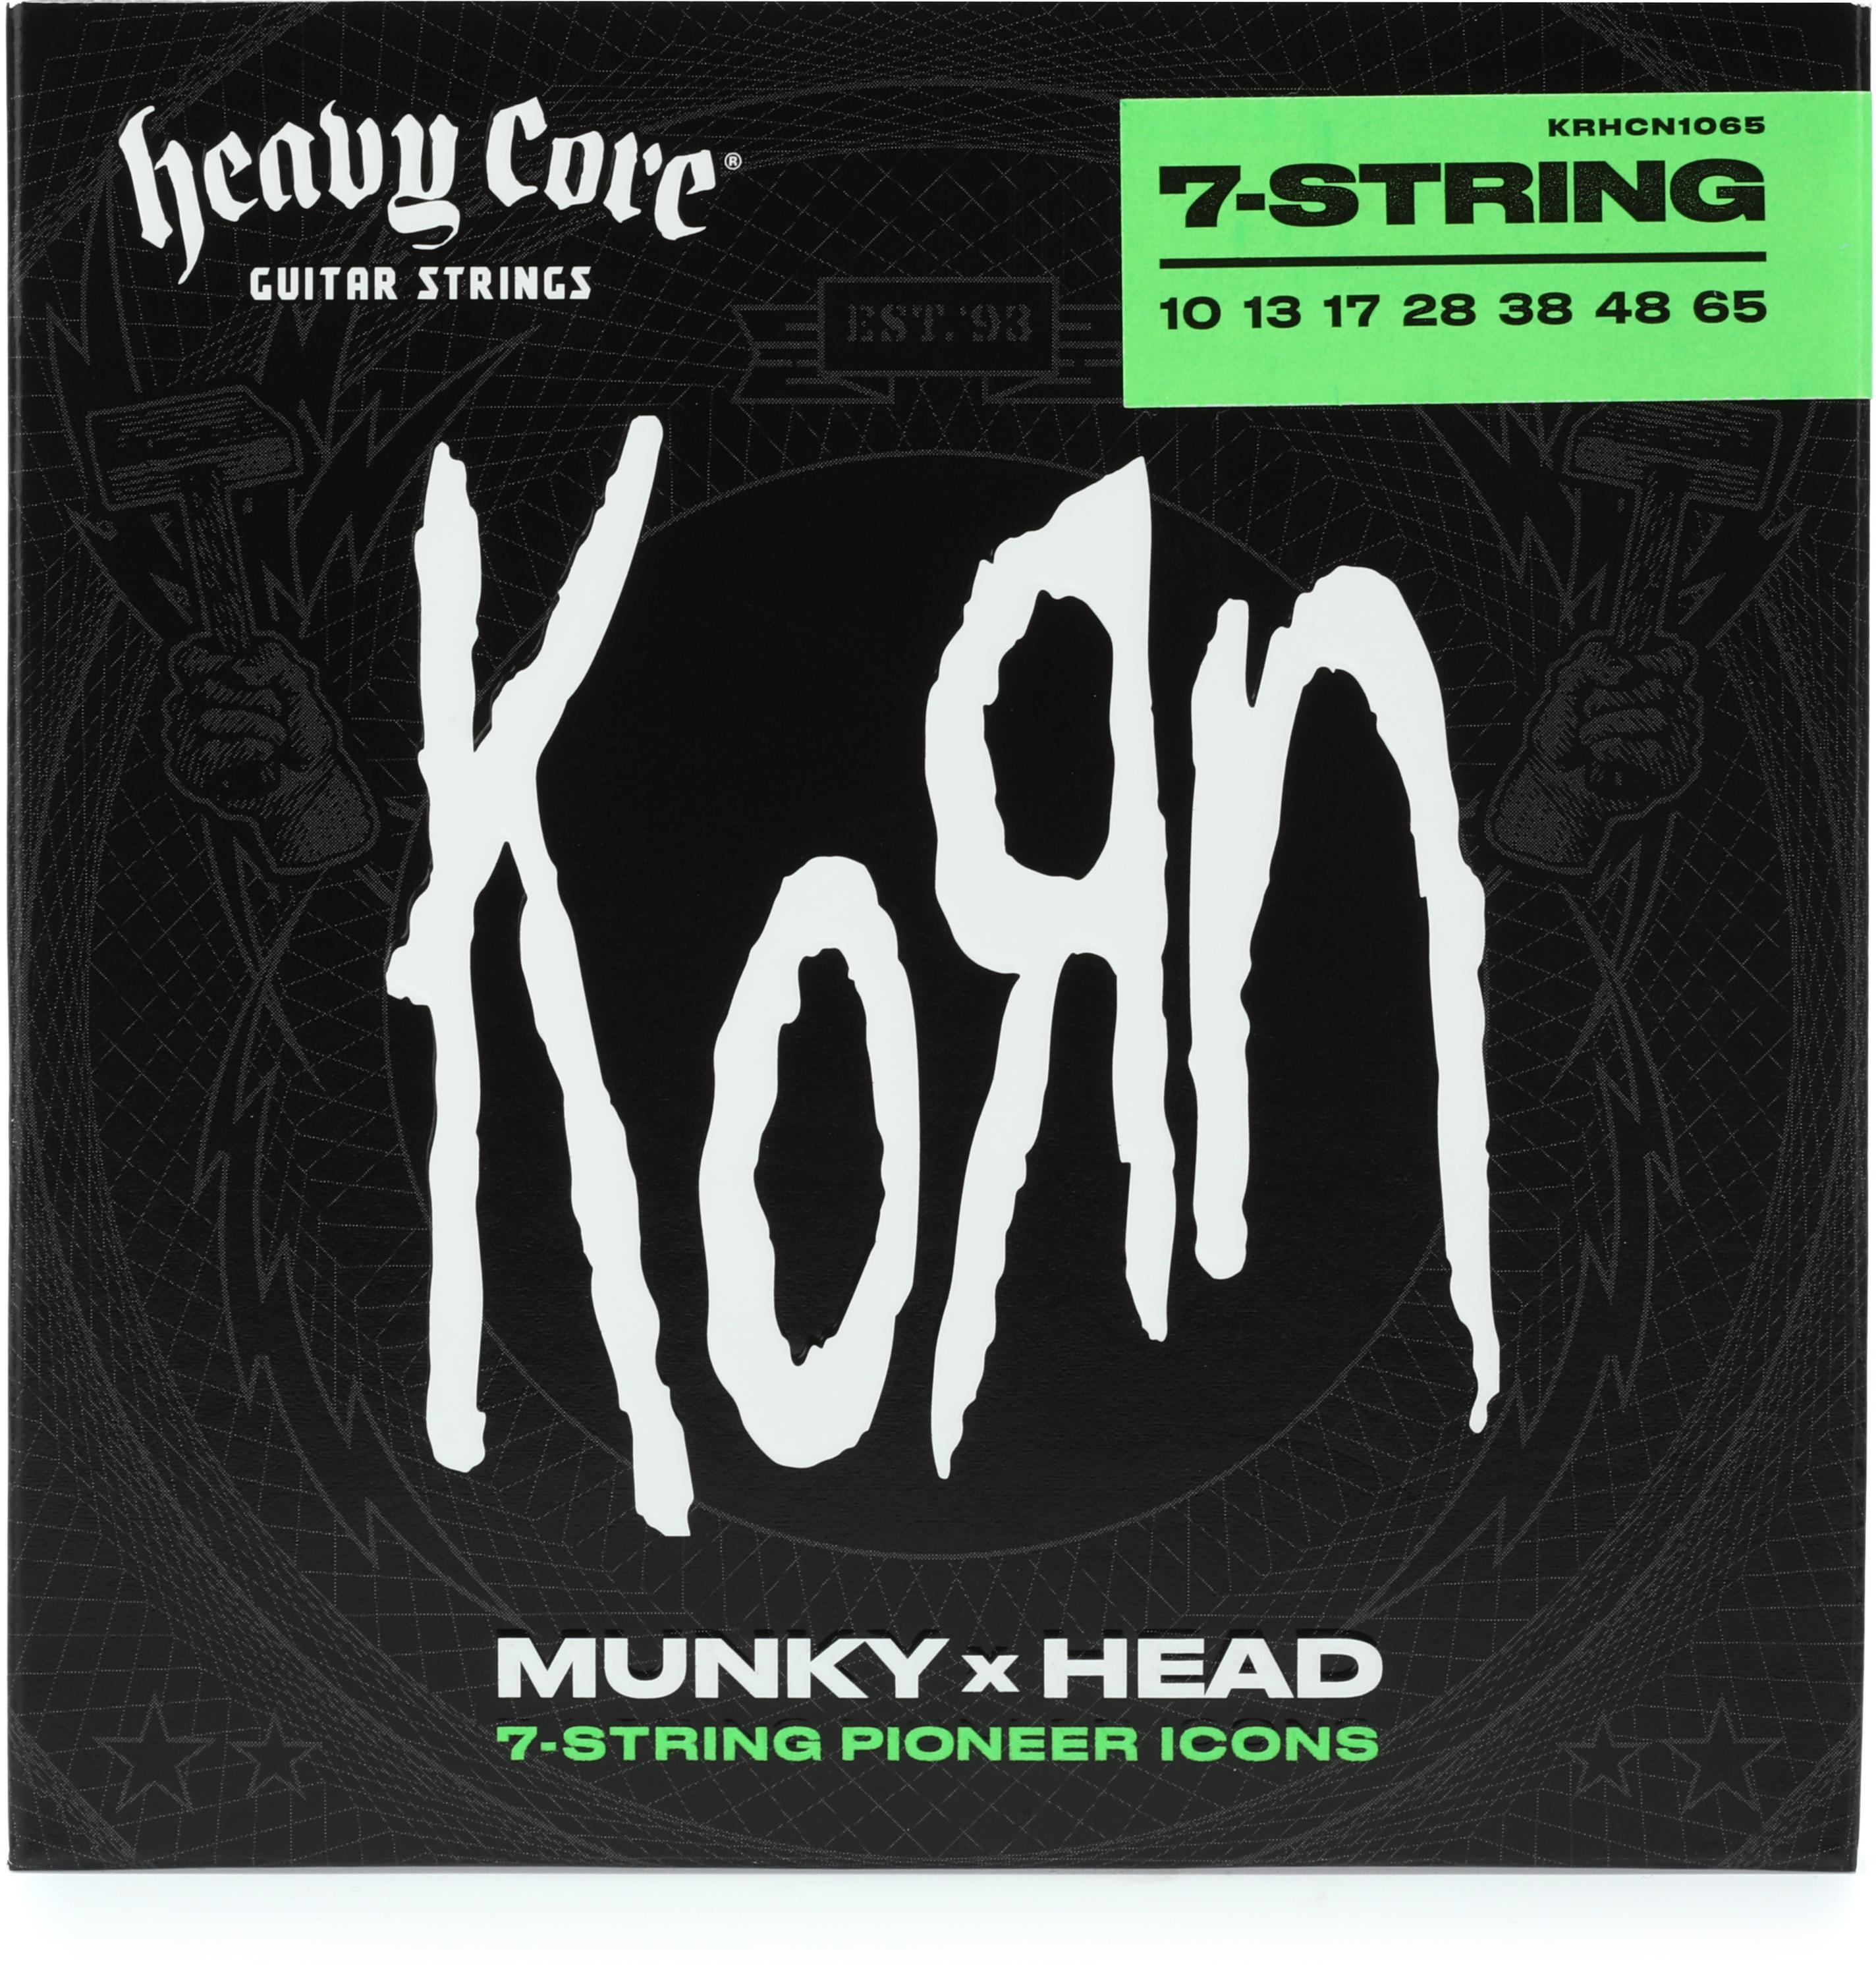 Dunlop KRHCN1065 Heavy Core Korn Electric Guitar Strings - .010-.065,  7-string